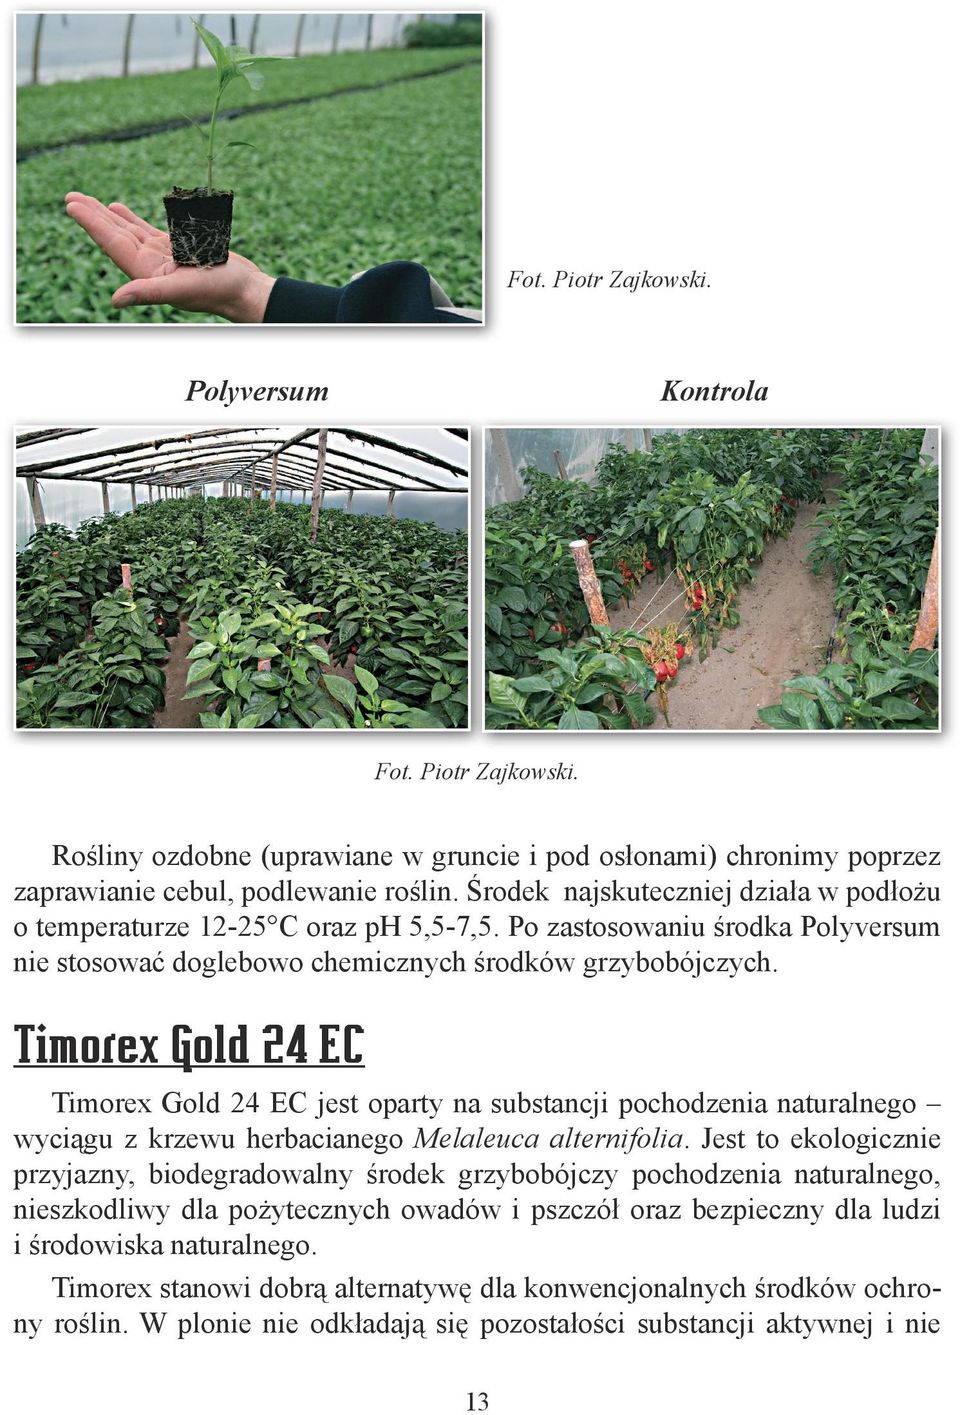 Timorex Gold 24 EC Timorex Gold 24 EC jest oparty na substancji pochodzenia naturalnego wyciągu z krzewu herbacianego Melaleuca alternifolia.